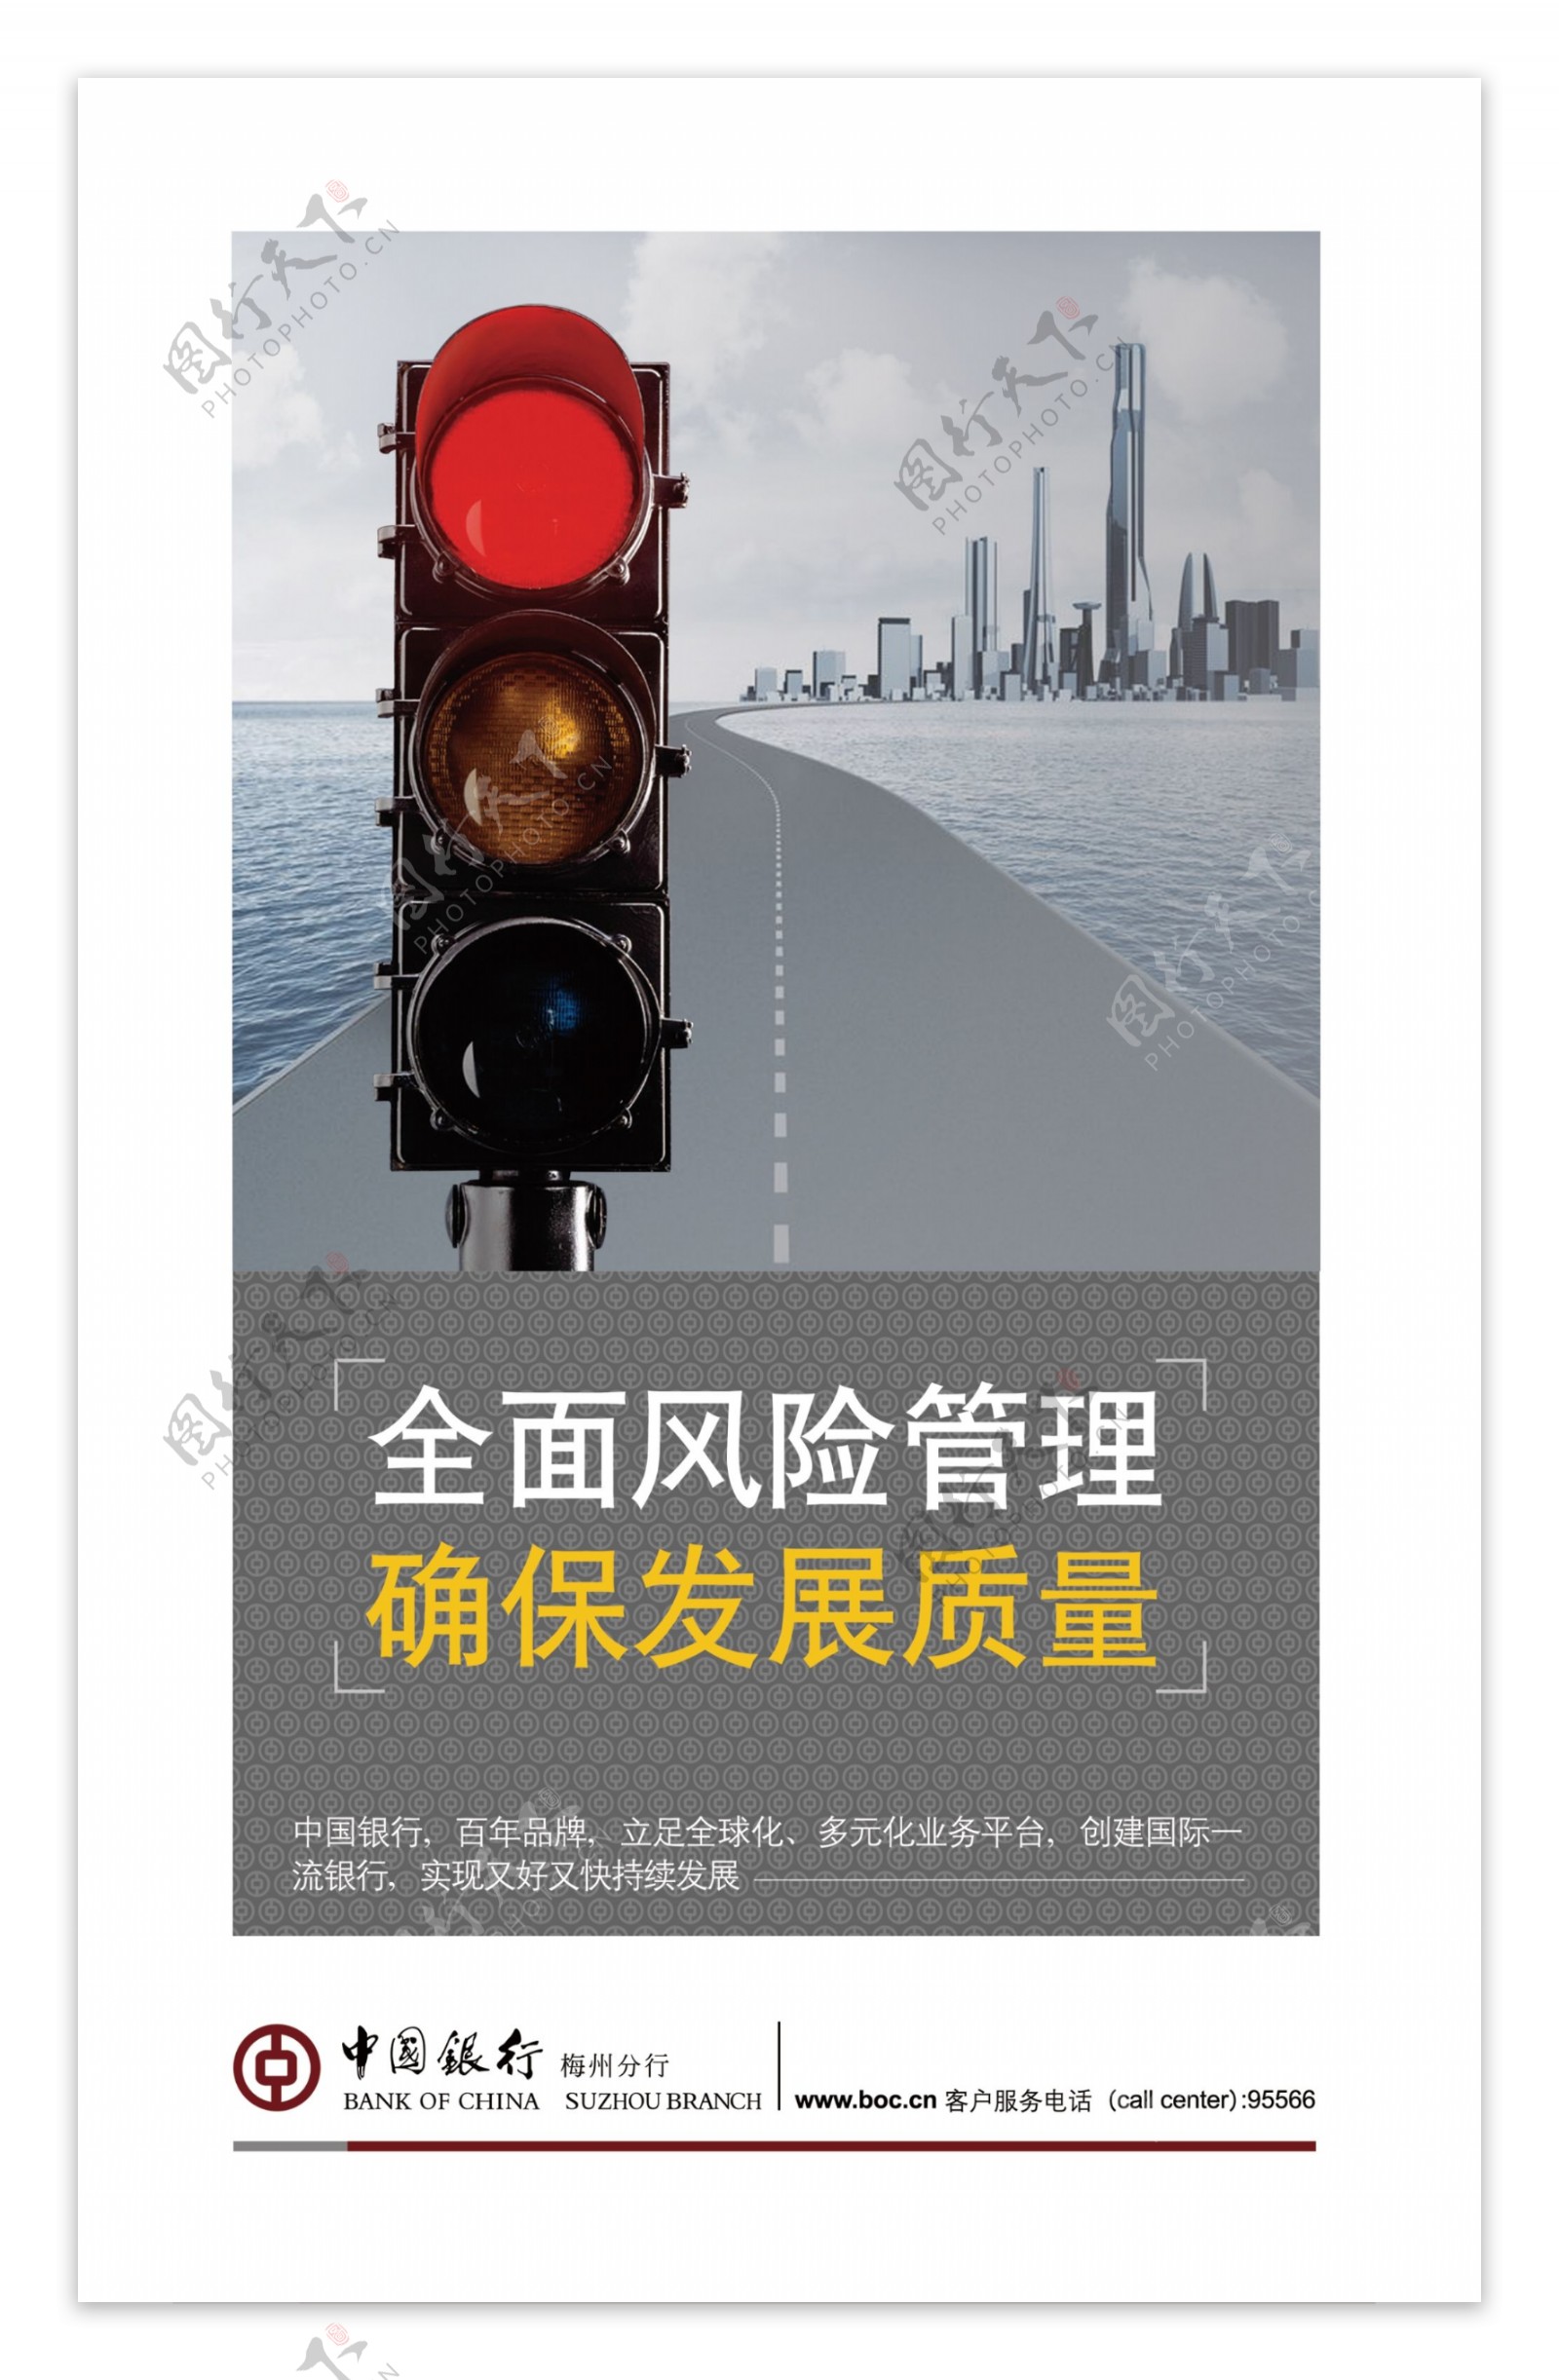 中国银行海报